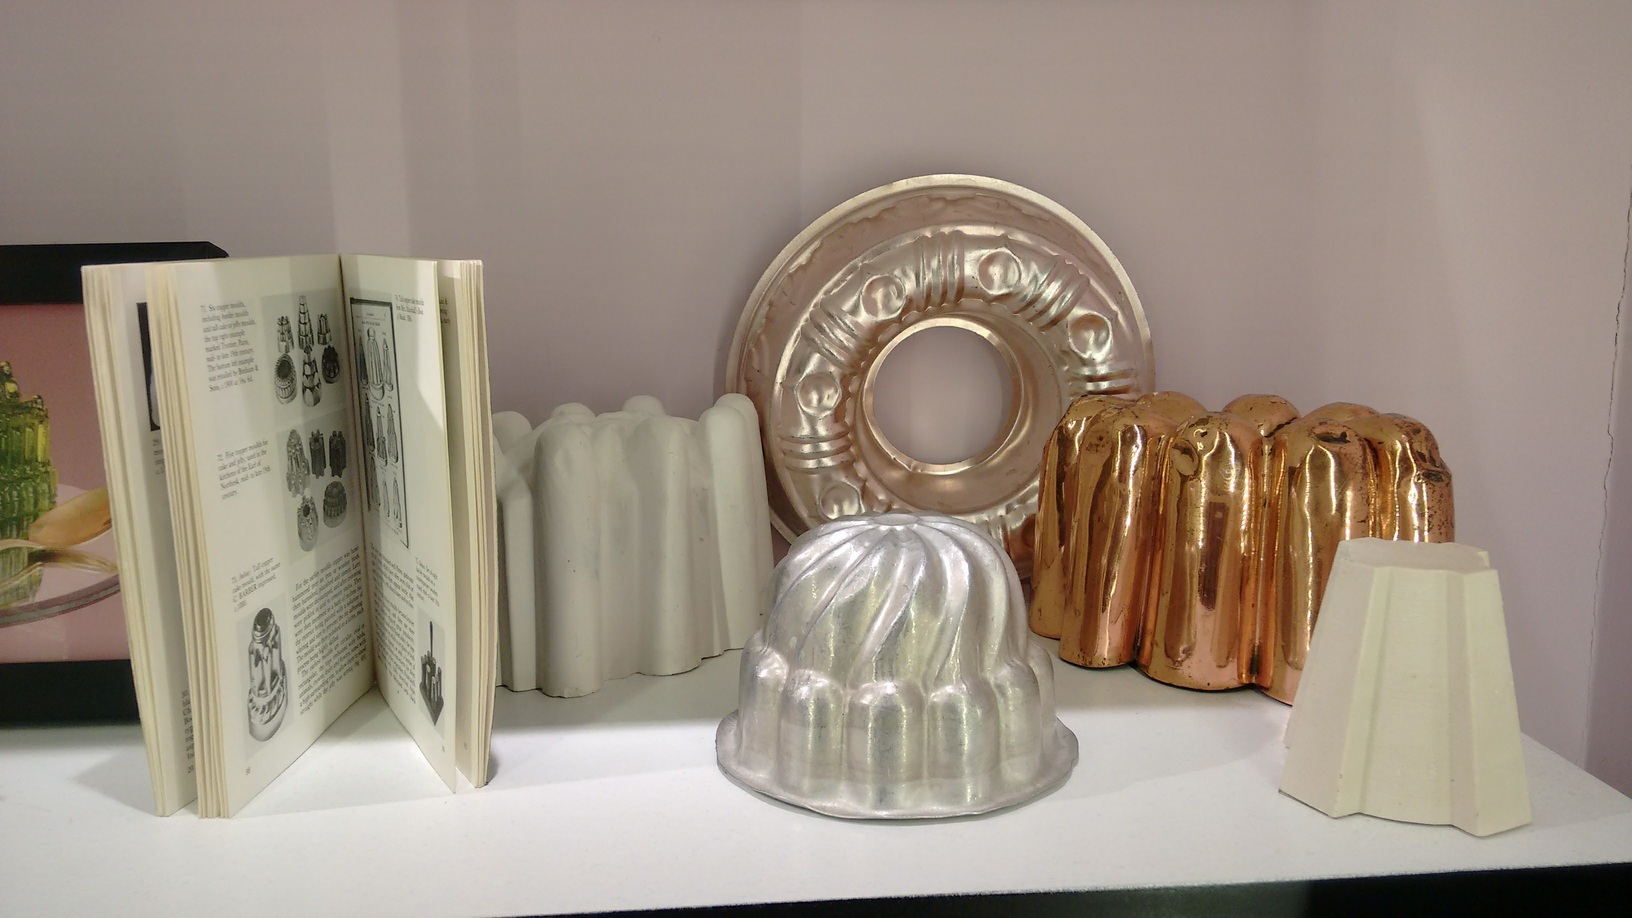 Moldes de gelatina utilizados pelos artistas estão em exposição